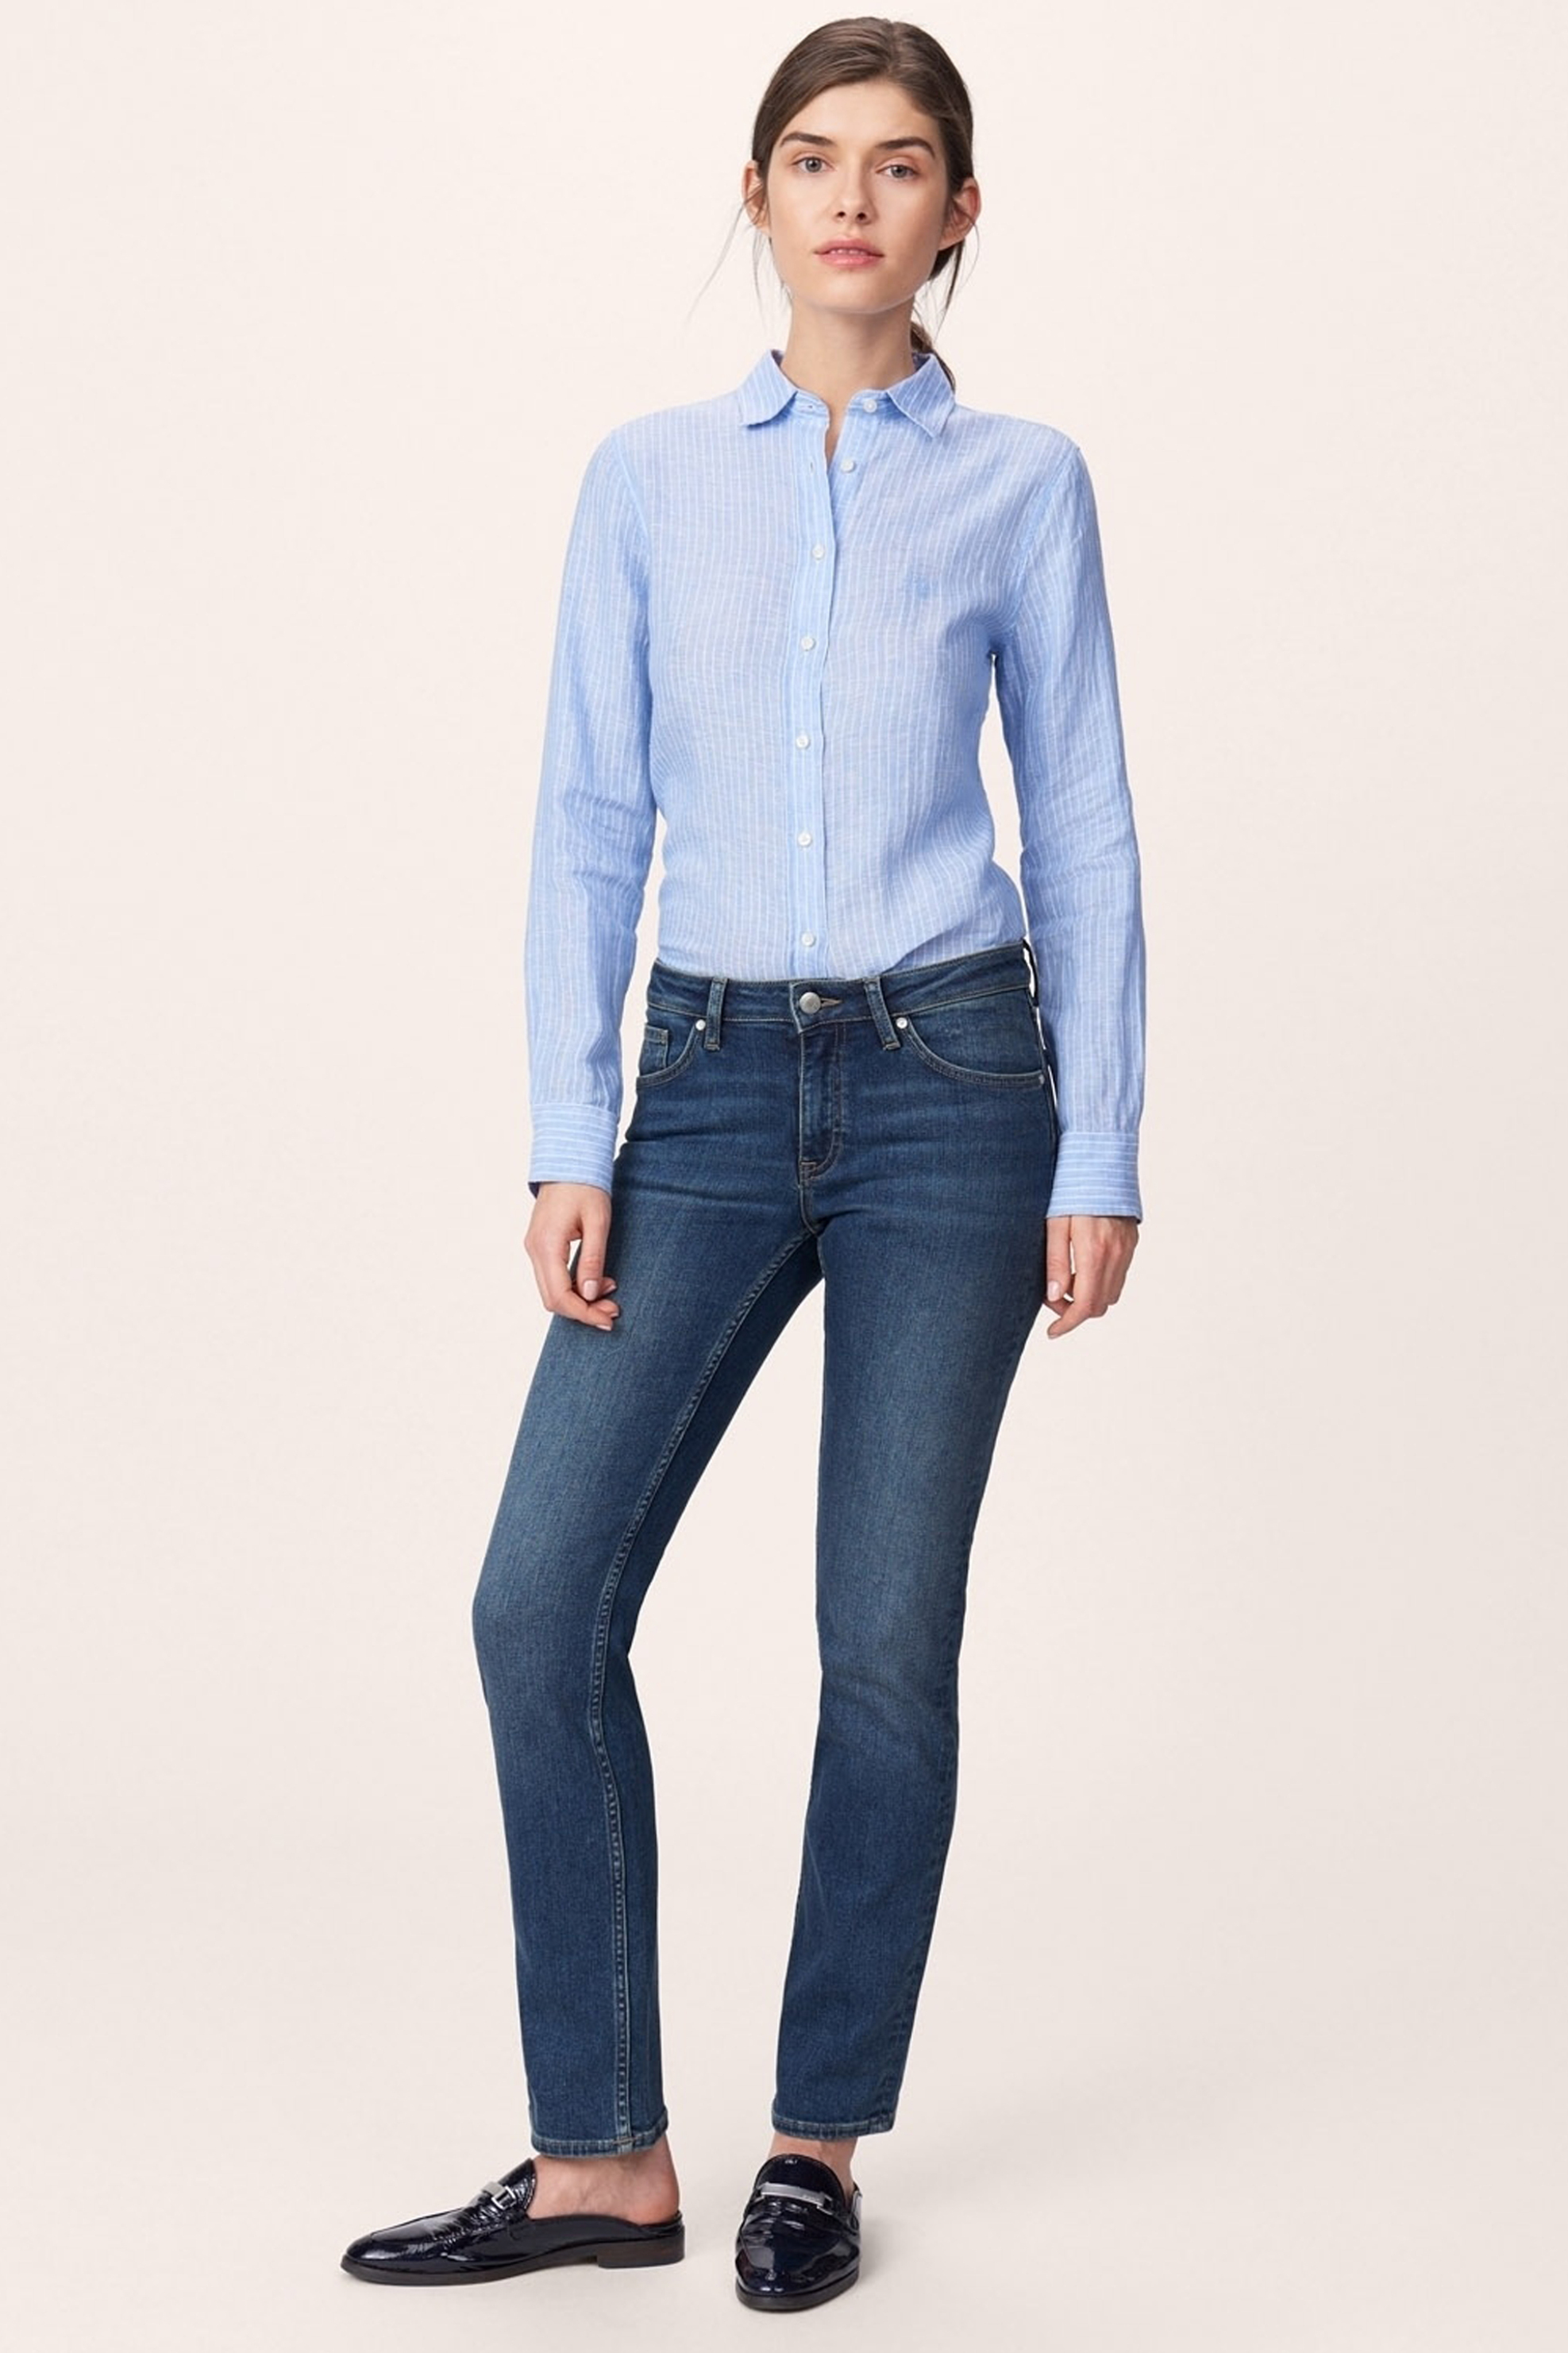 Γυναίκα > ΡΟΥΧΑ > Jeans > Straight Gant γυναικείο τζην παντελόνι Straight Super Stretch Denim (32L) - 4100036 Μπλε